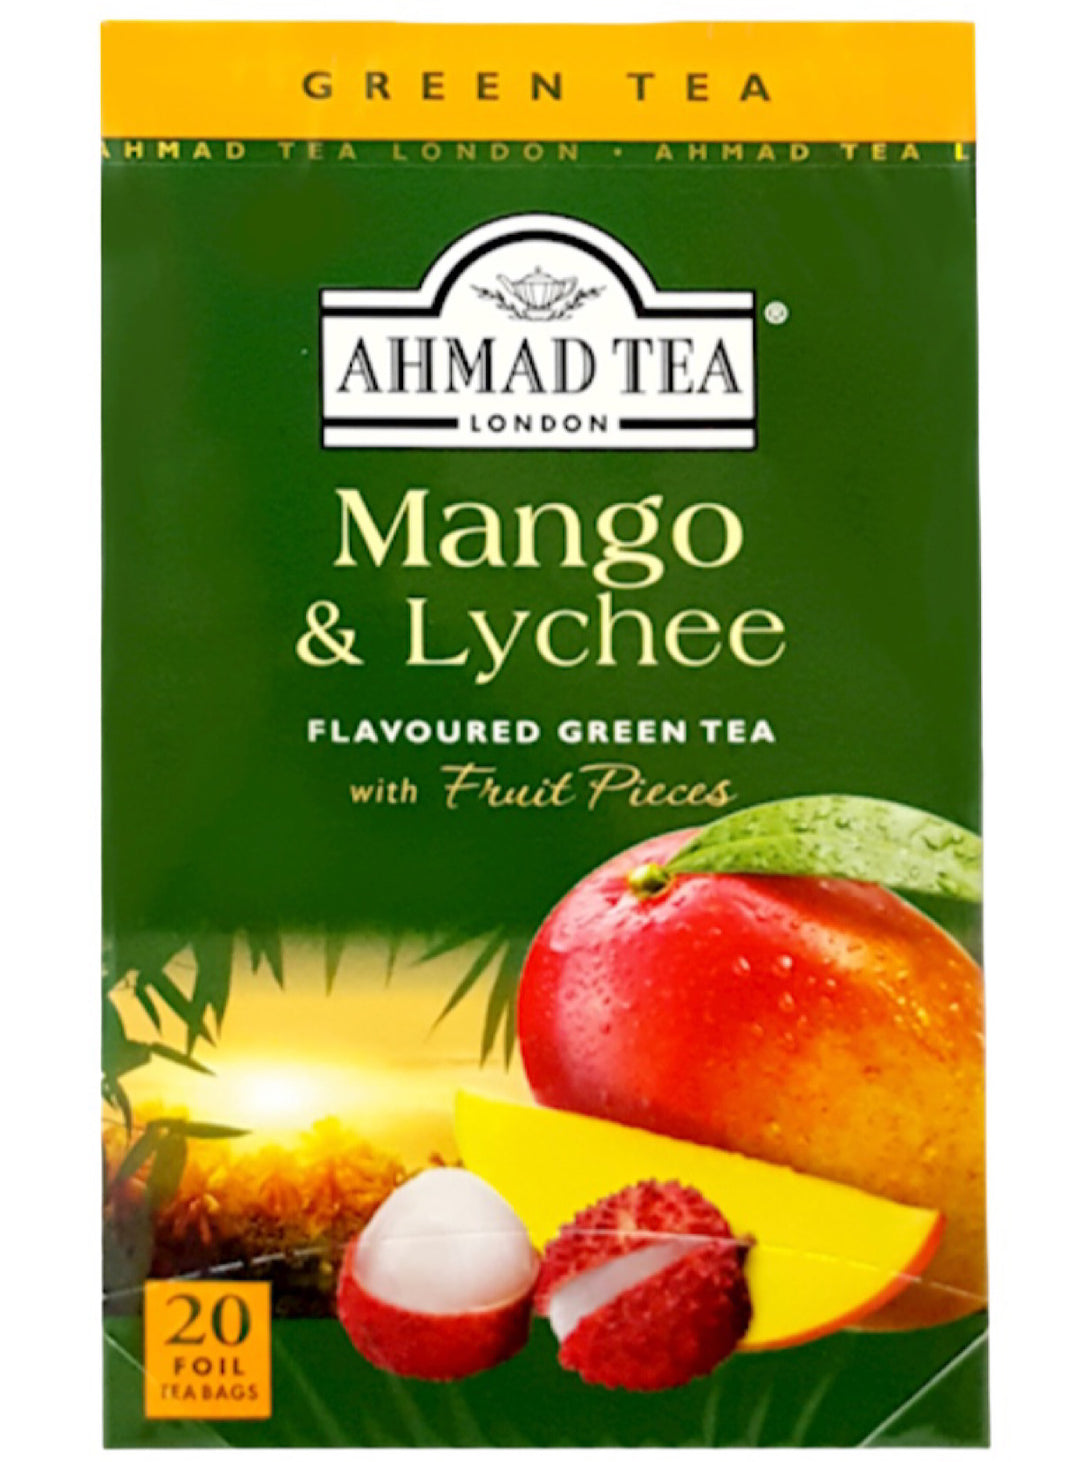 Mango and Lychee Green Tea - Ahmad Tea - 20 Tea Bags